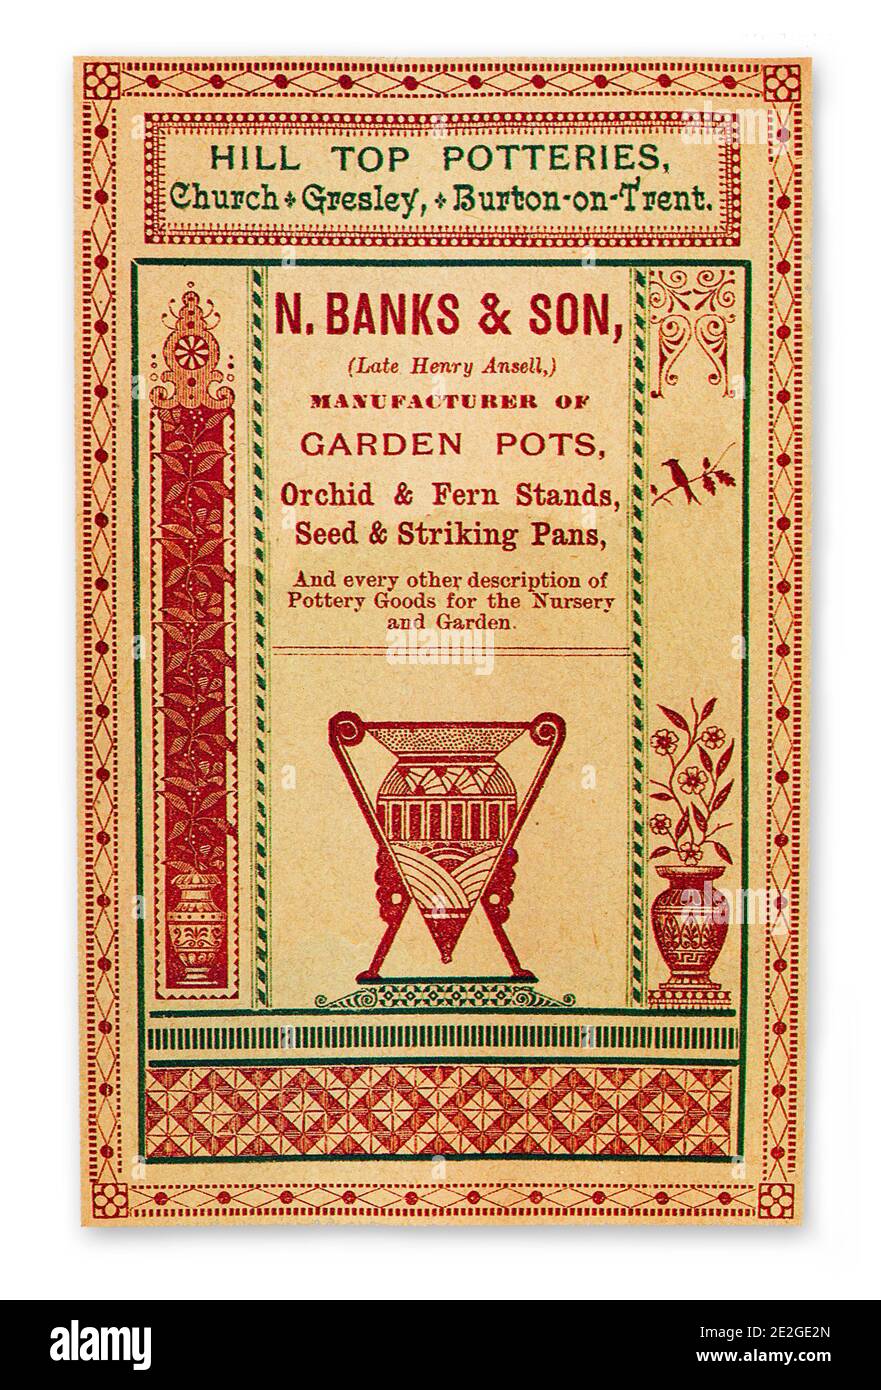 Une publicité commerciale pour les pots de jardin et la céramique de Hill Poteries de haut niveau pendant la folie victorienne pour les fougères et les orchidées Banque D'Images